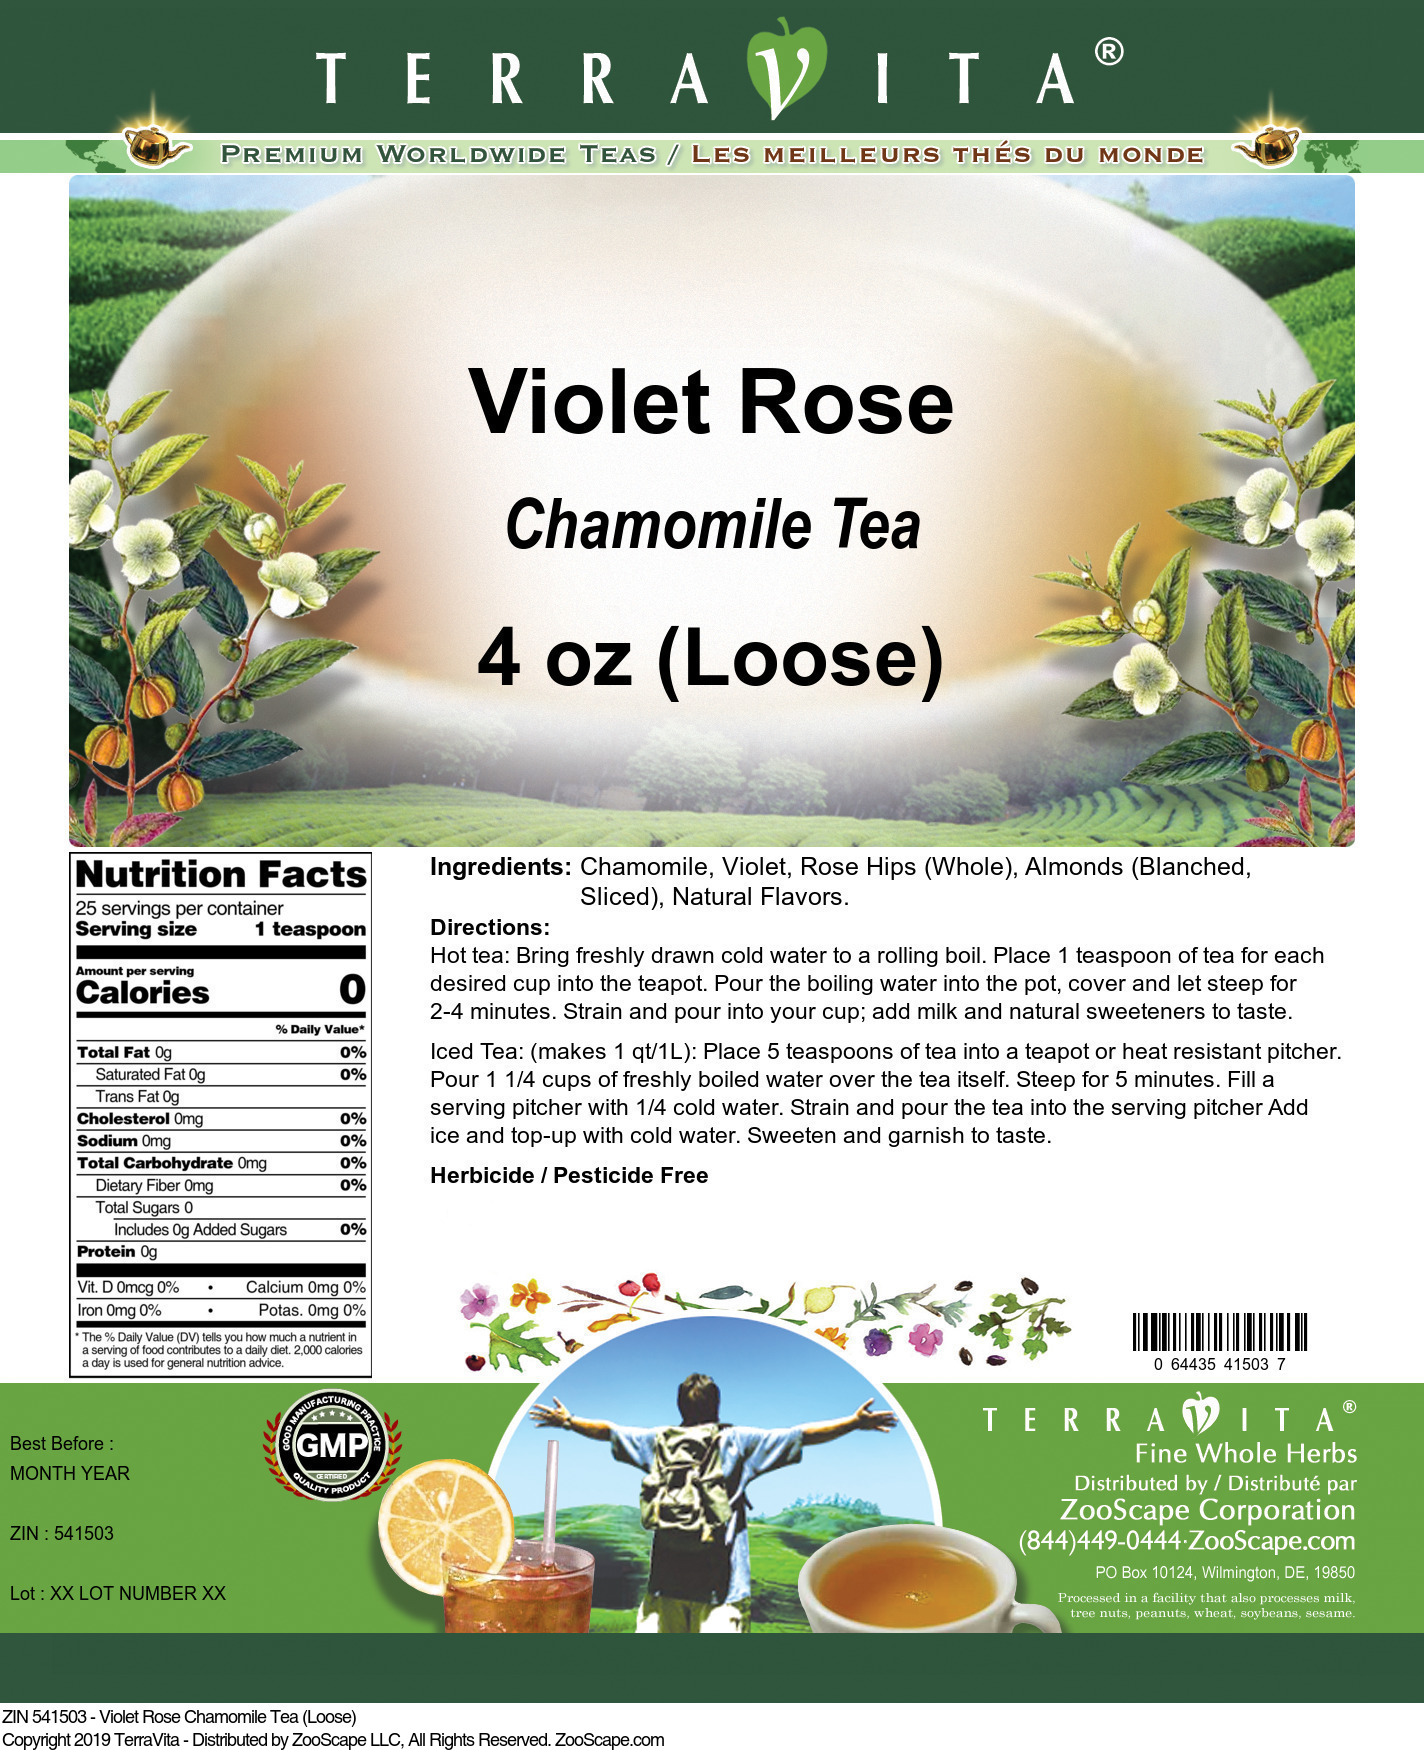 Violet Rose Chamomile Tea (Loose) - Label